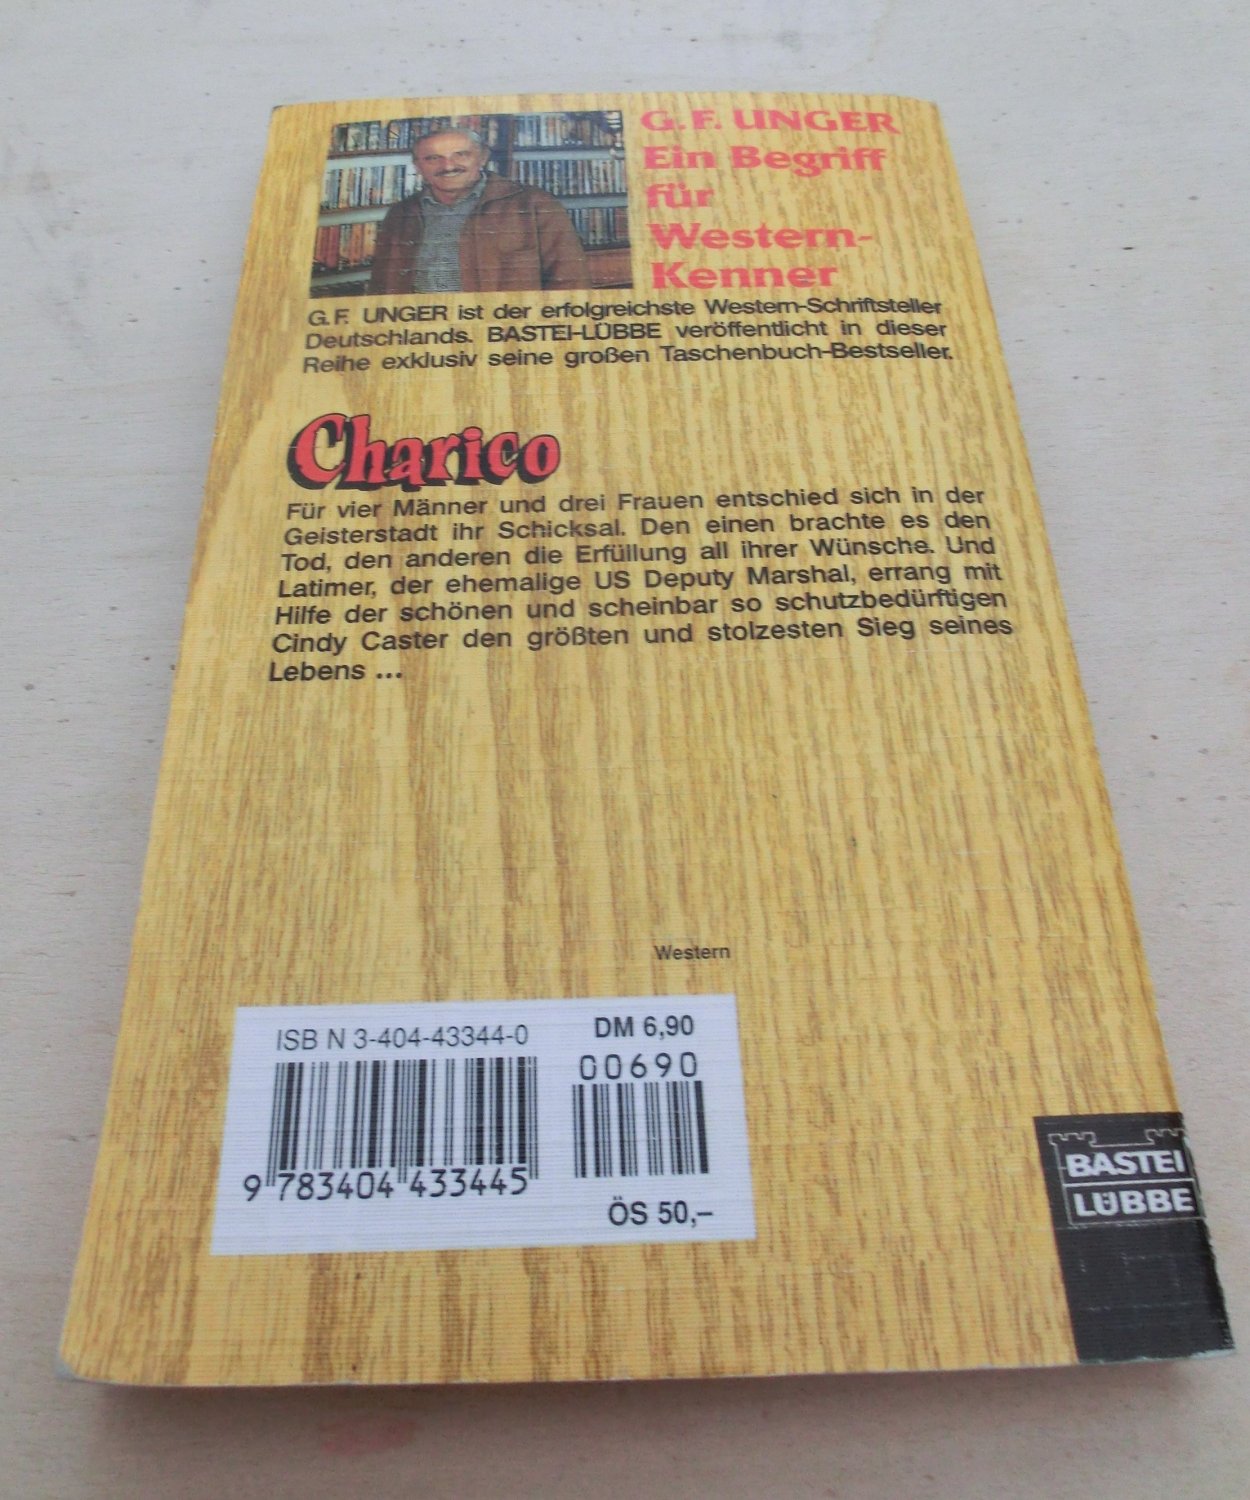 Charico“ (Unger, G F) – Buch gebraucht kaufen – A02qMa5e01ZZS